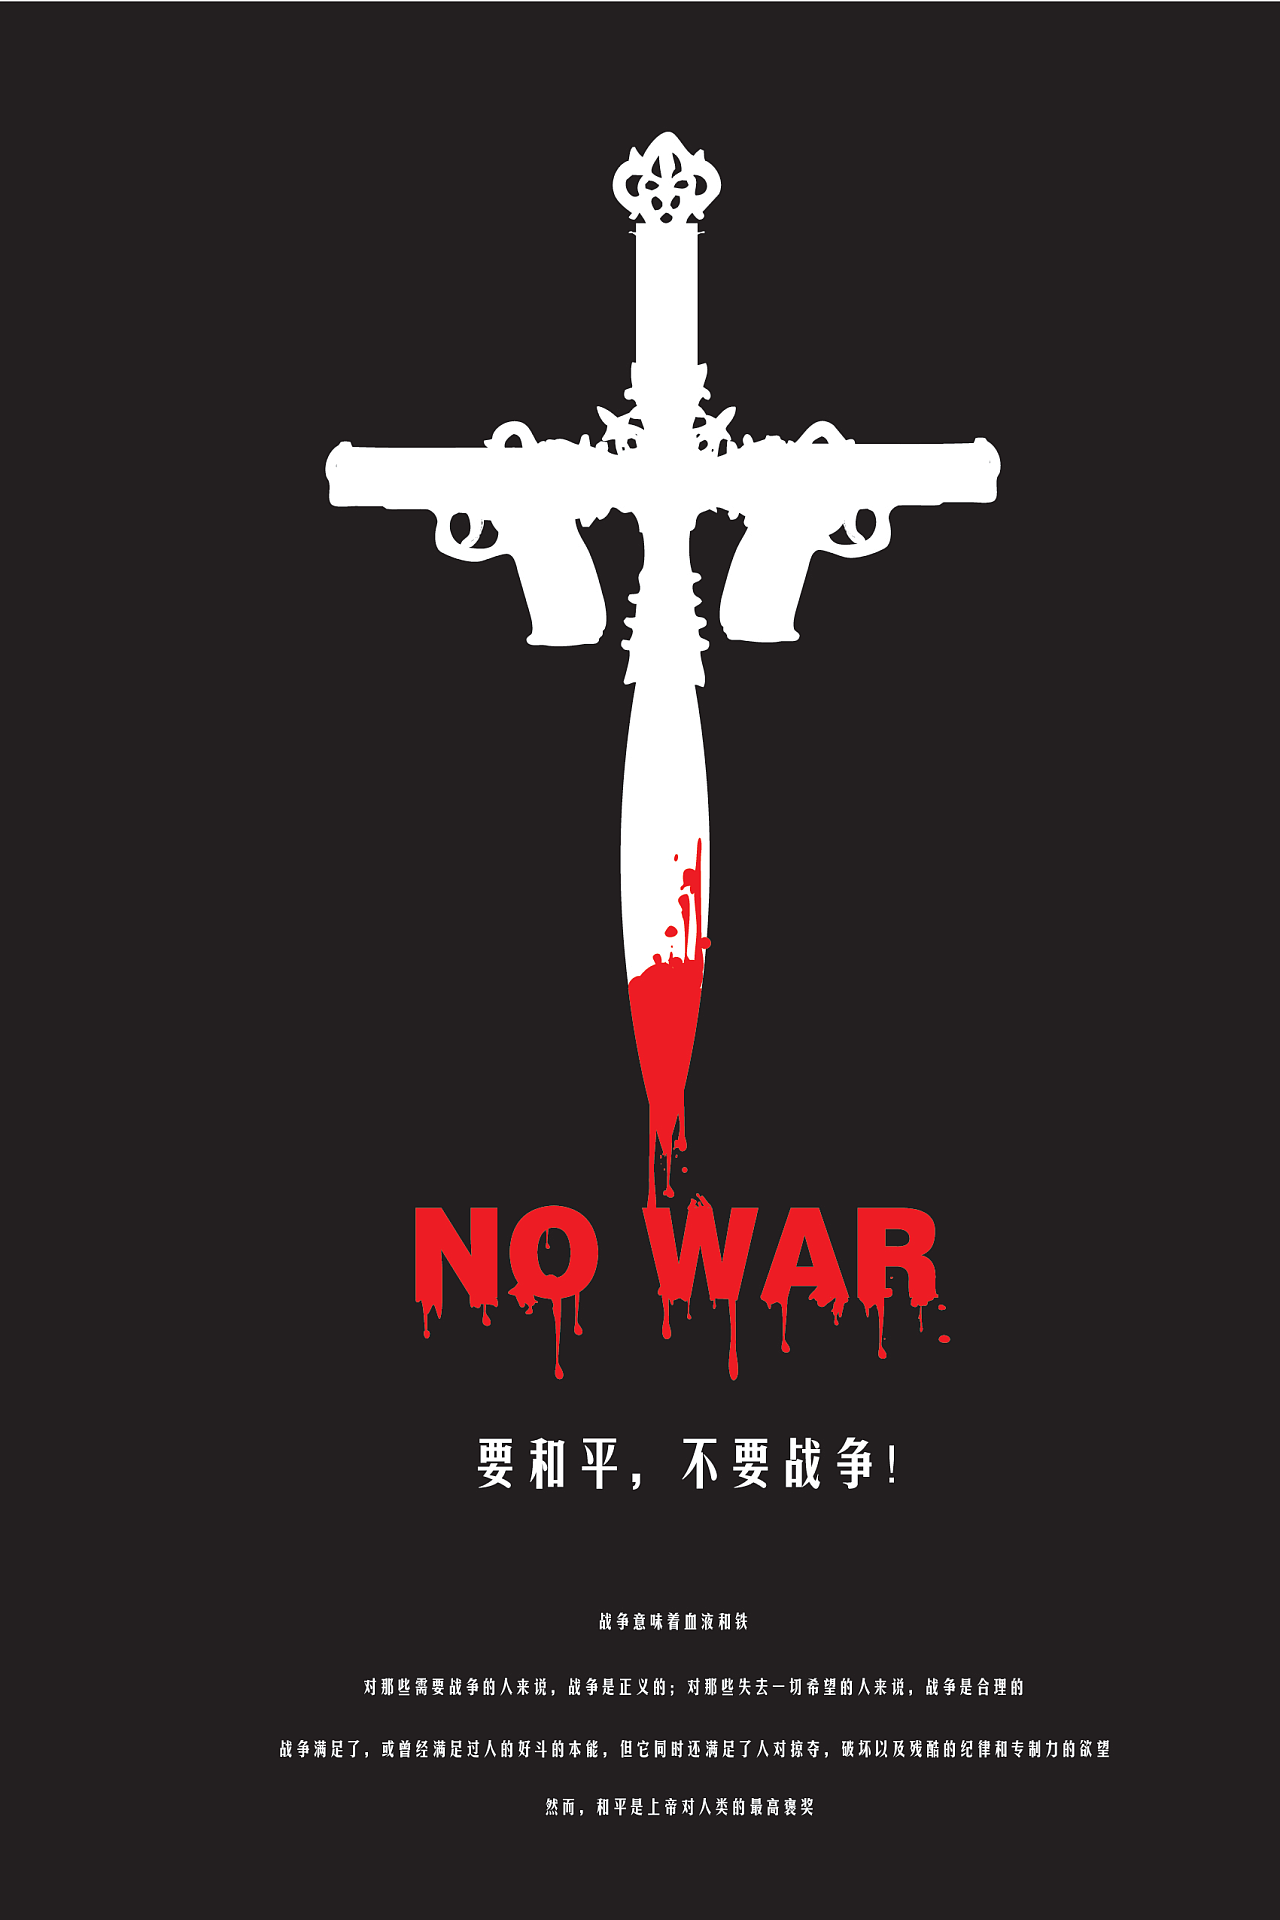 而十字架所代表的是和平,滴血的十字架呼吁我们反对战争,爱好和平